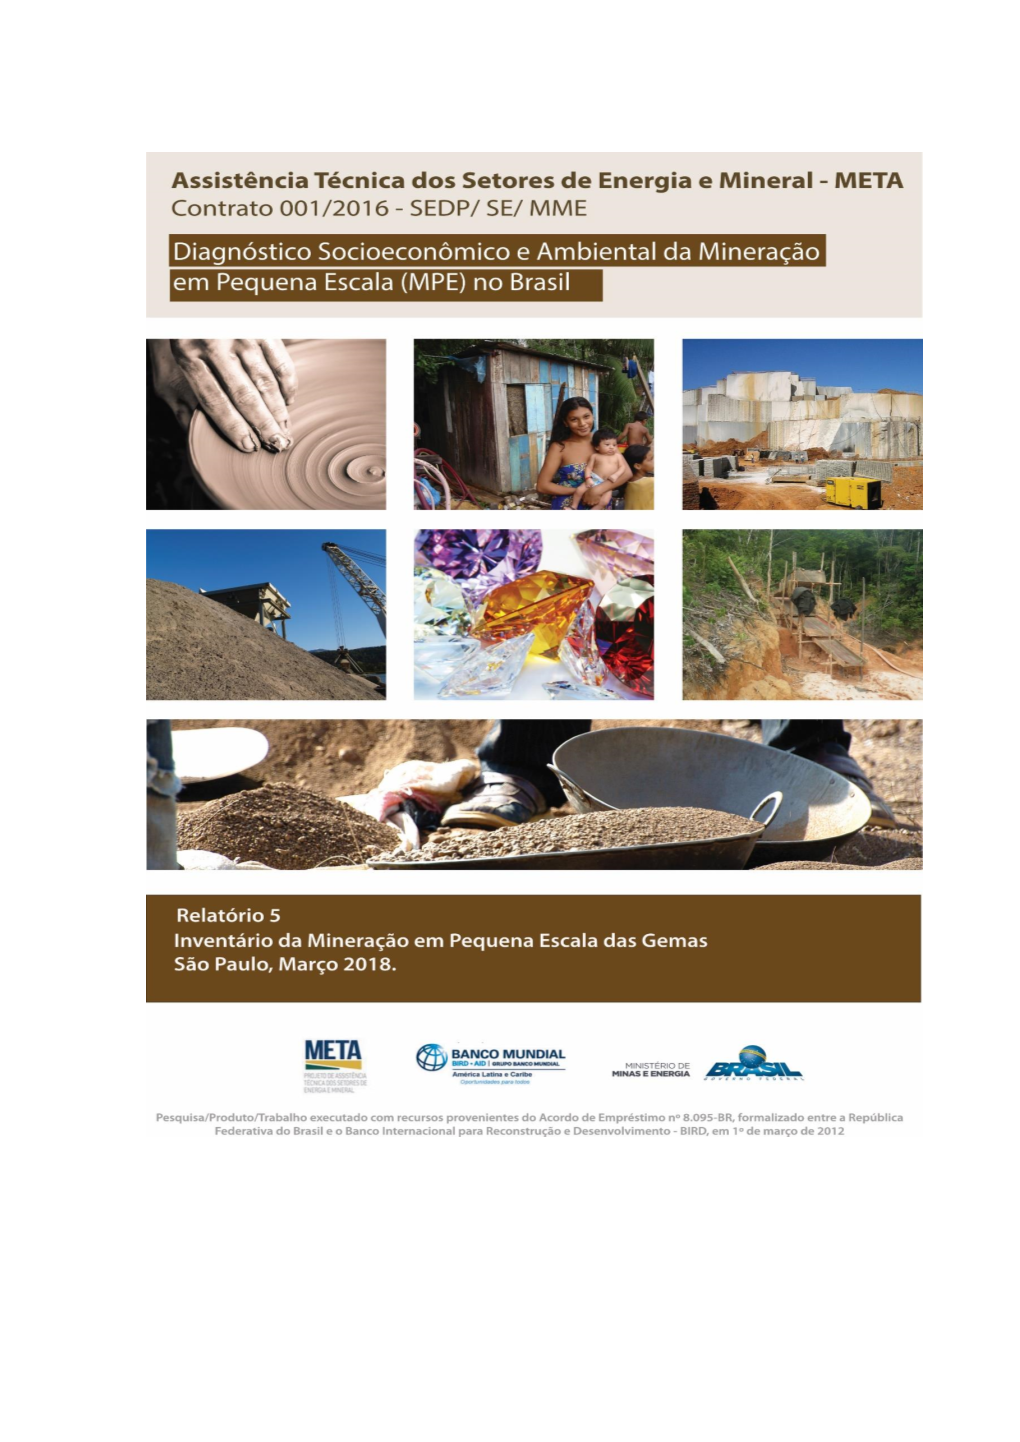 Relatório Do Inventário Da Mineração Em Pequena Escala Das Gemas Consórcio Projekt-Consult/RCS Global